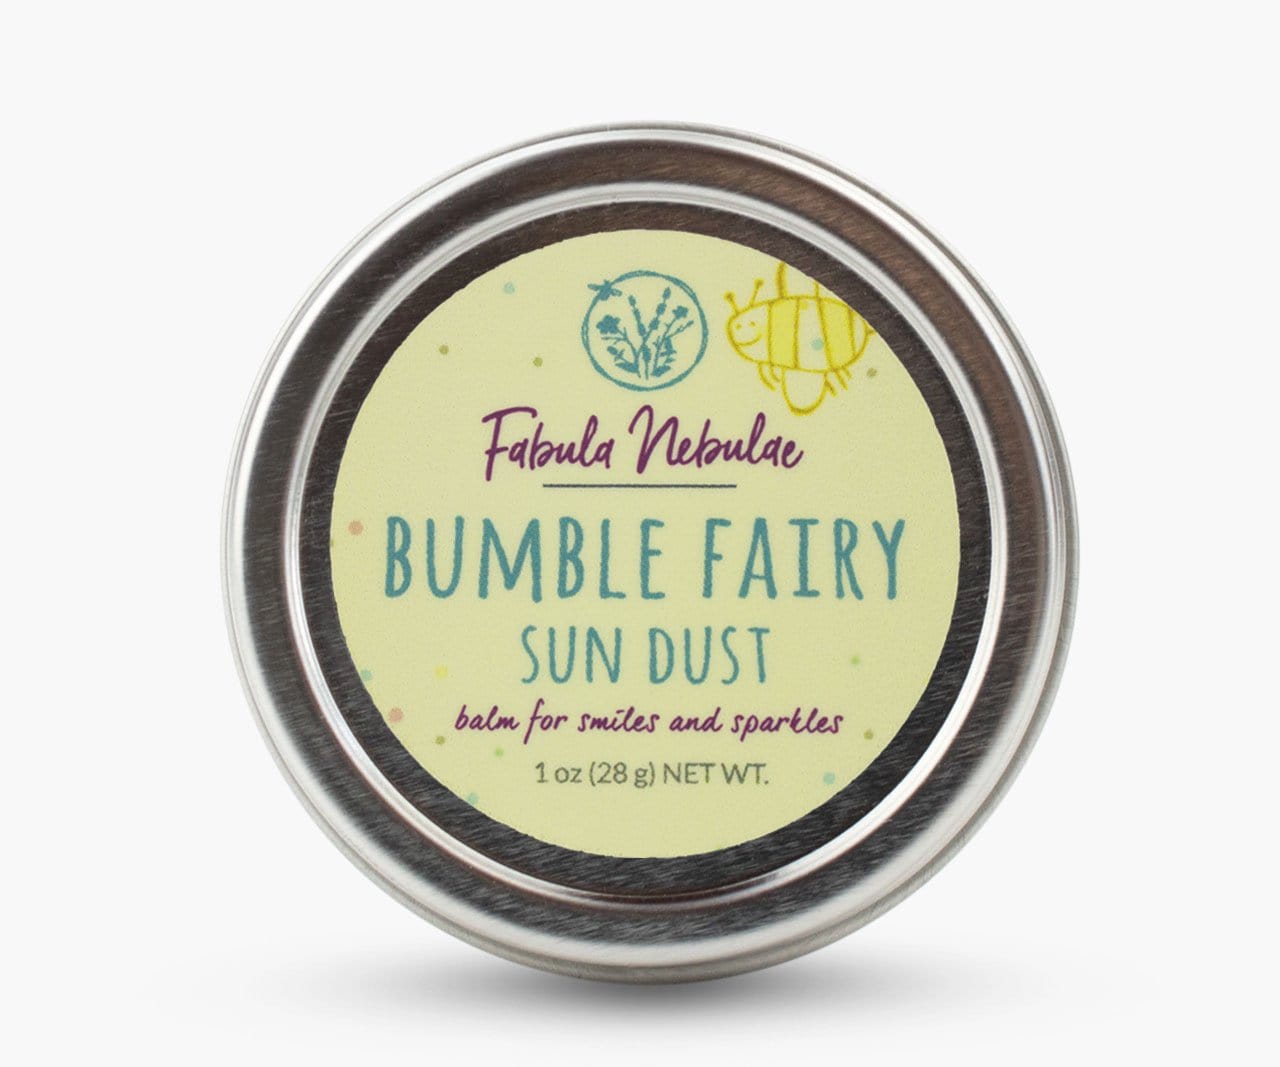 Bumble Fairy Sun Dust